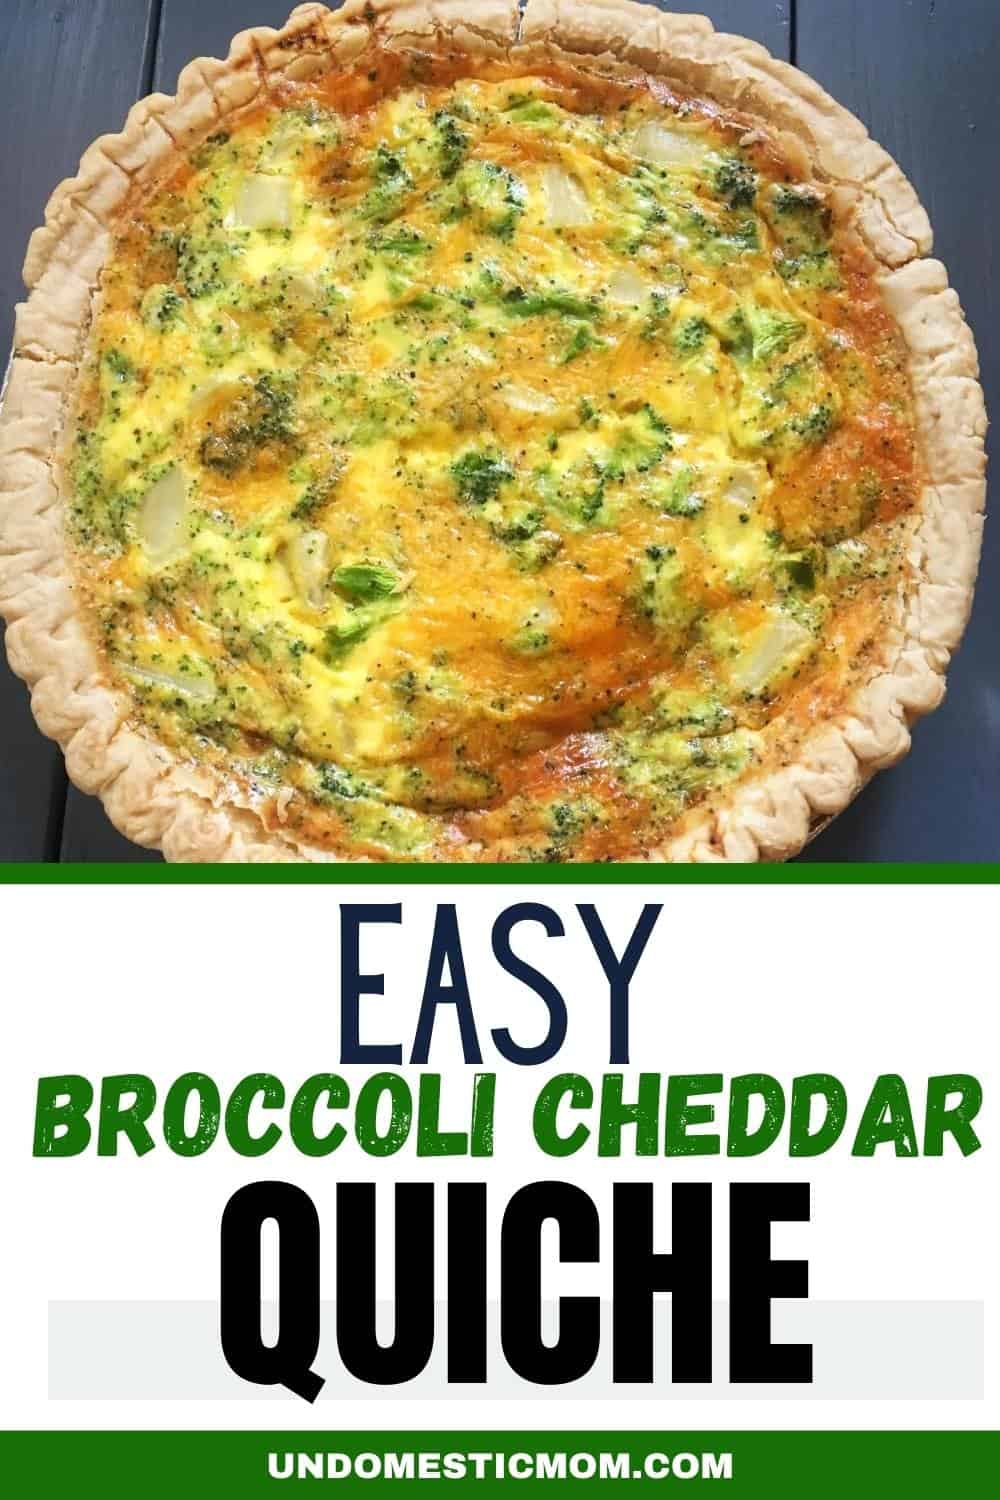 Easy Broccoli Cheddar Quiche Recipe - Undomestic Mom